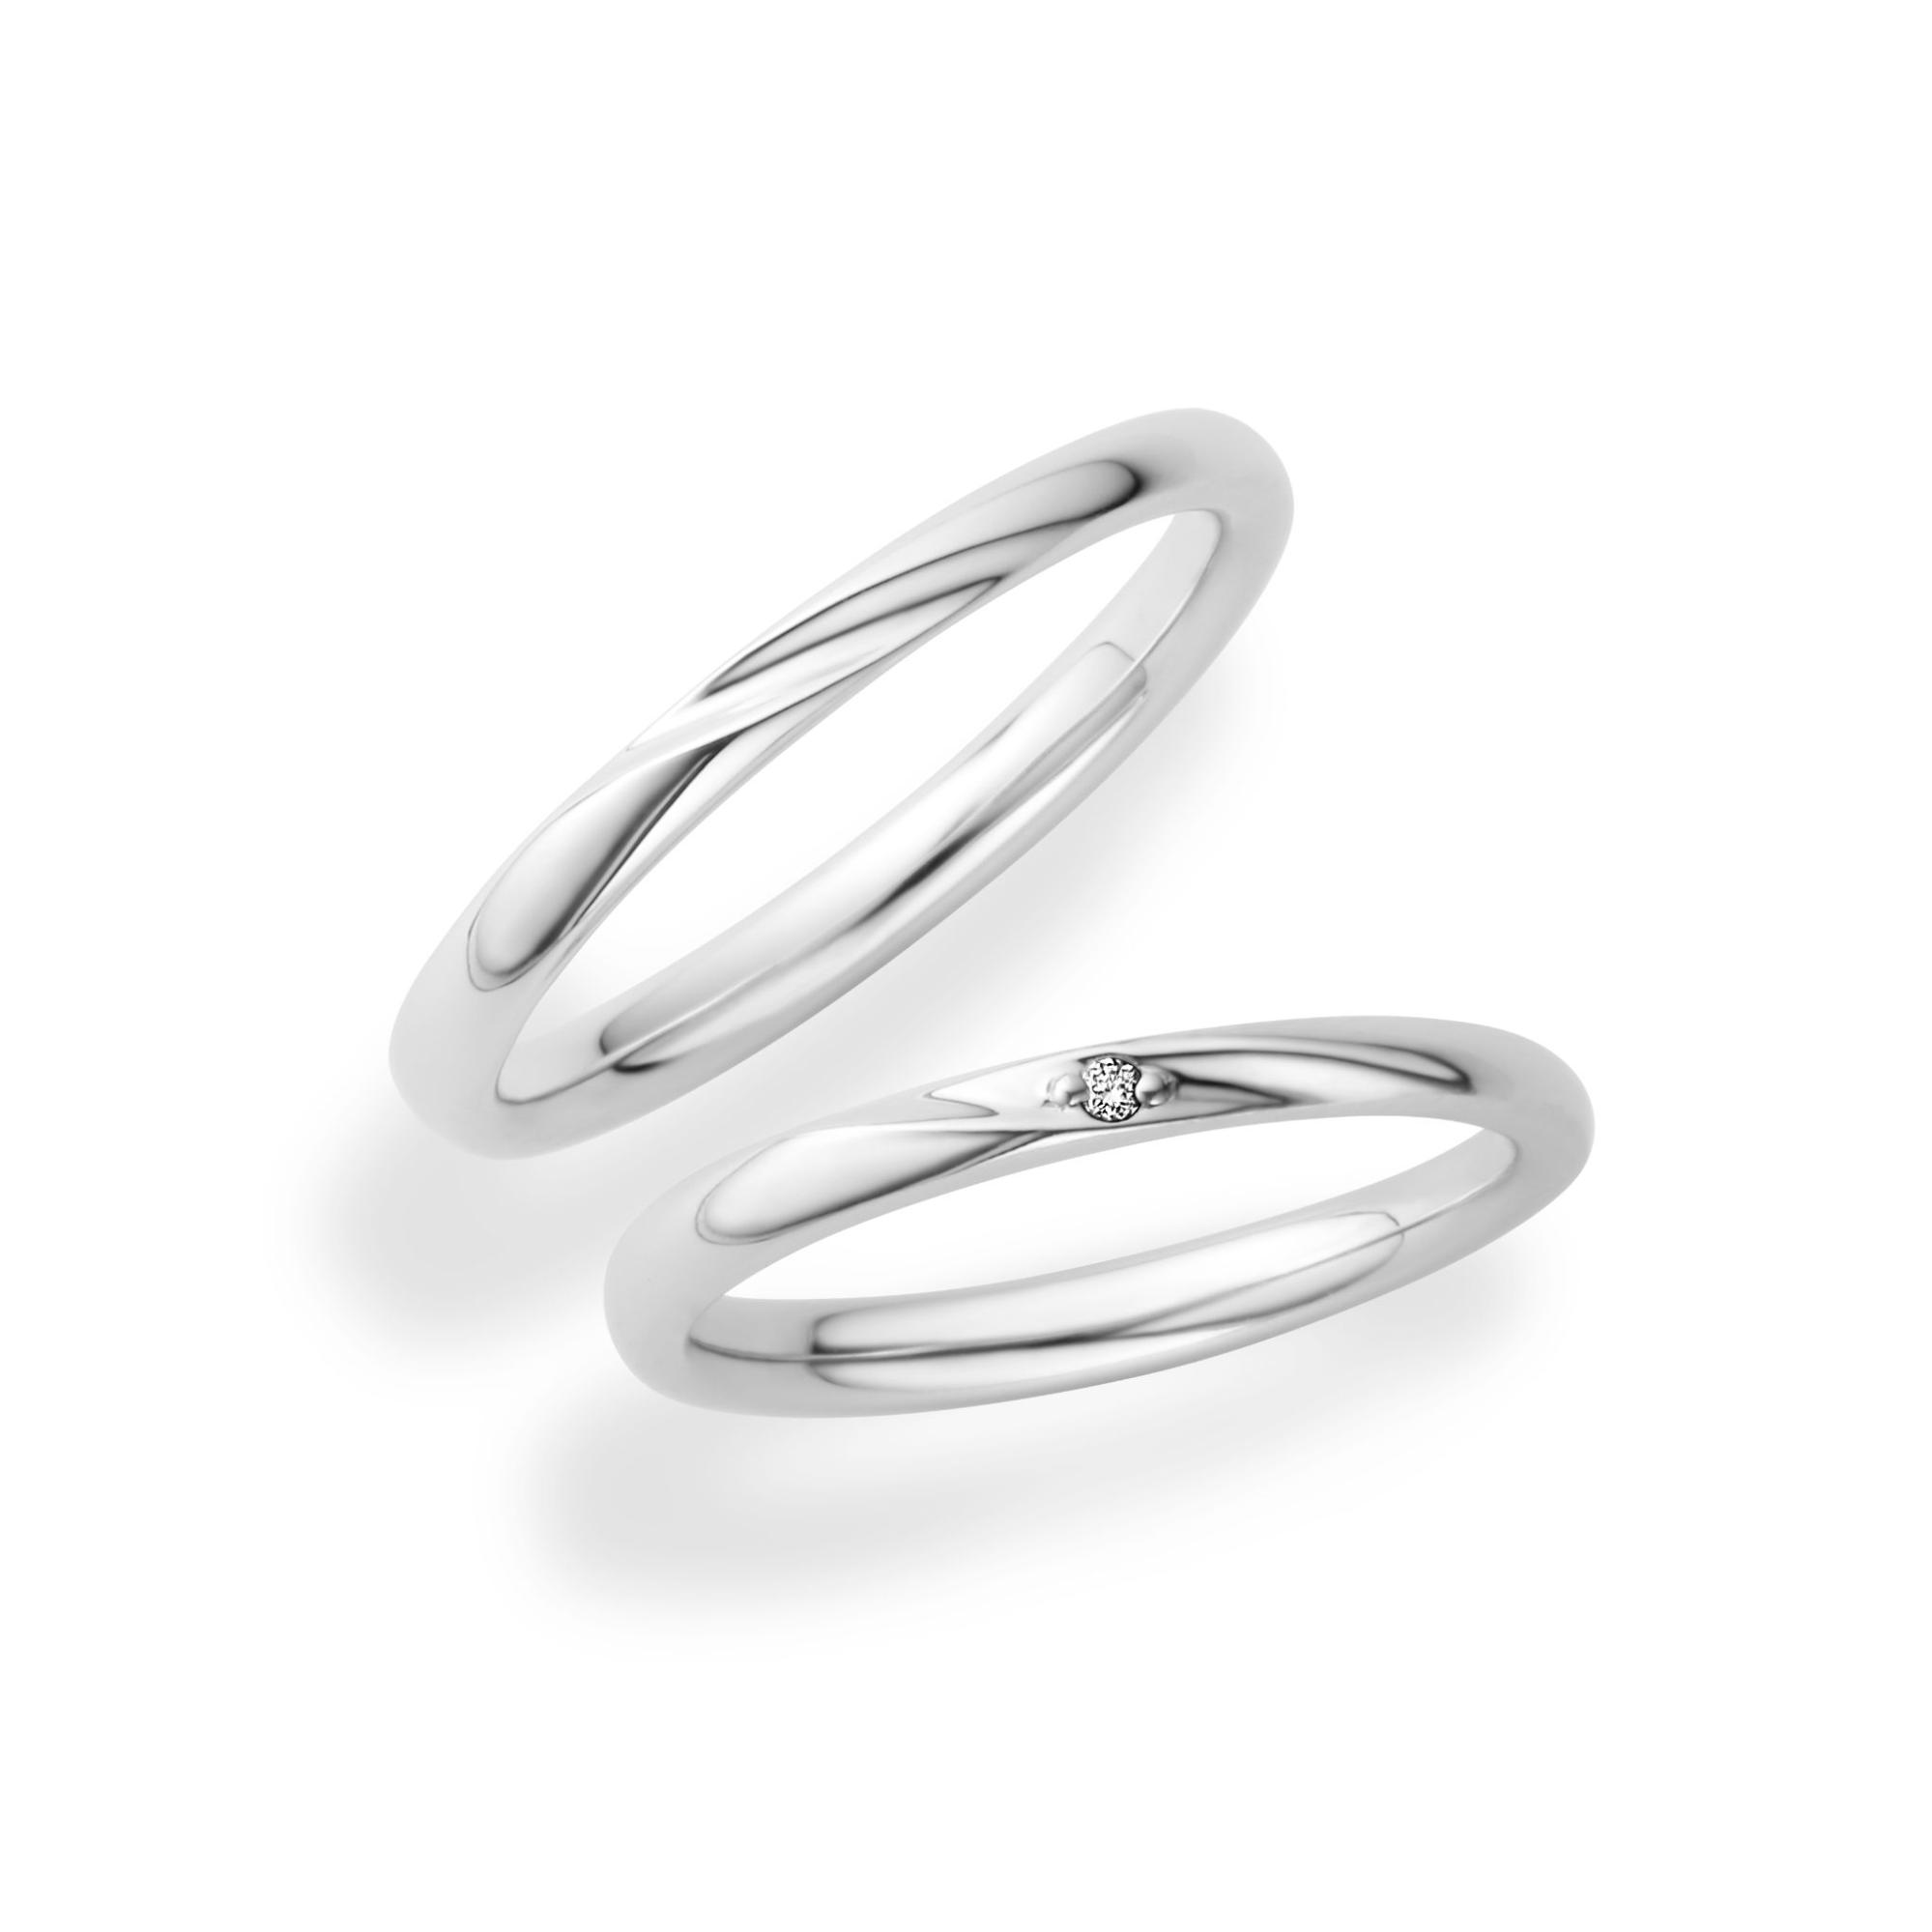 トレセンテ（TRECENTI）で人気の指輪デザイン「ガルボ」